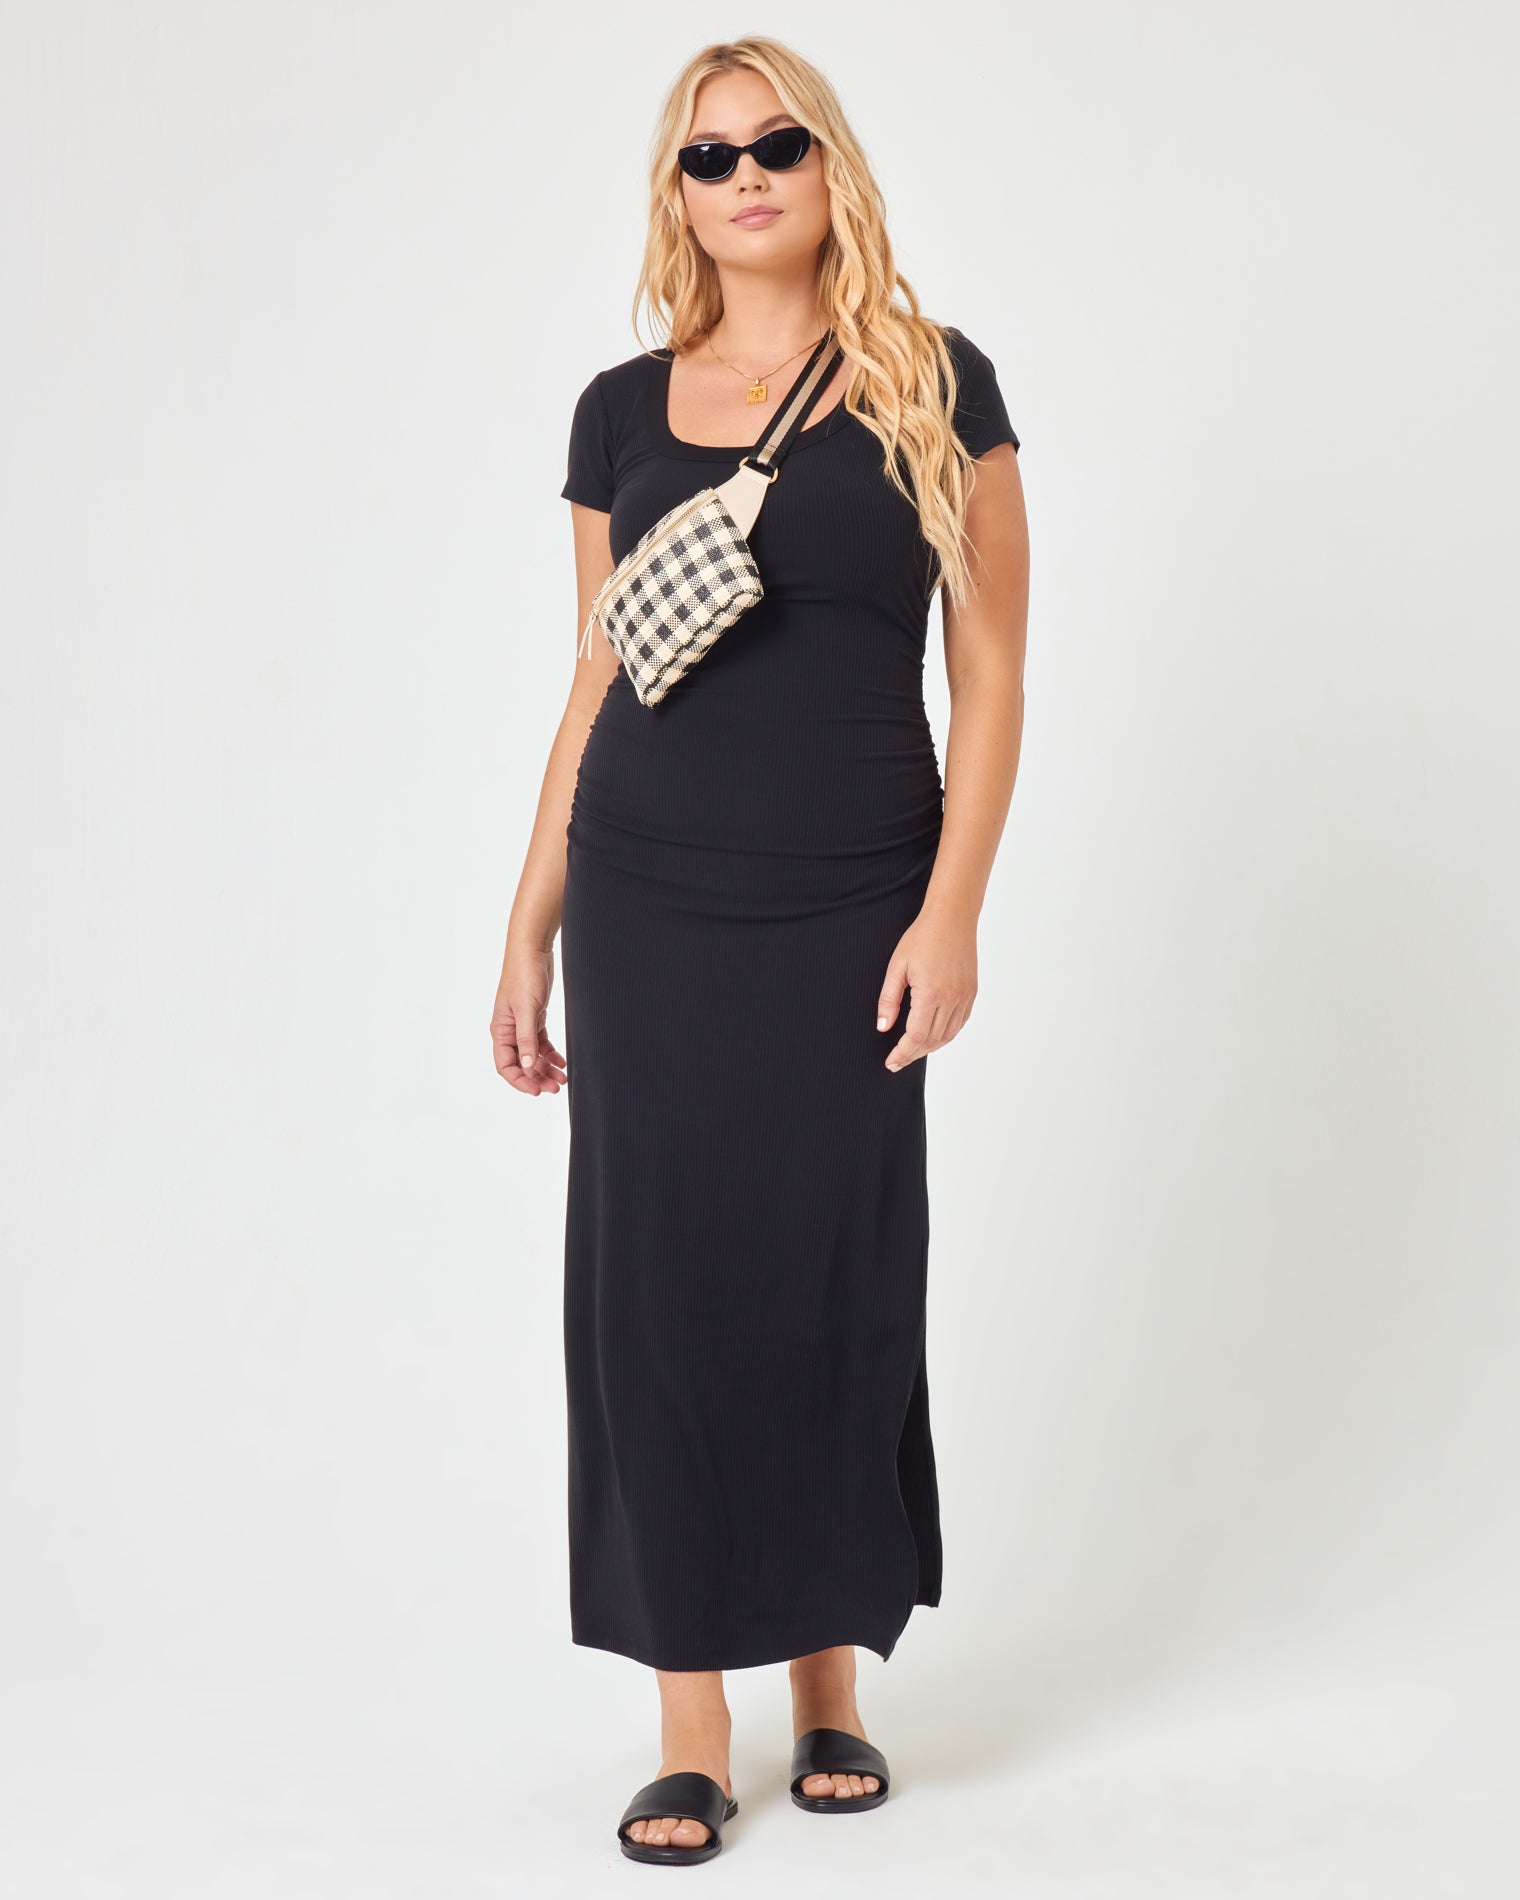 Valencia Dress Black | Model: Sydney (size: XL)